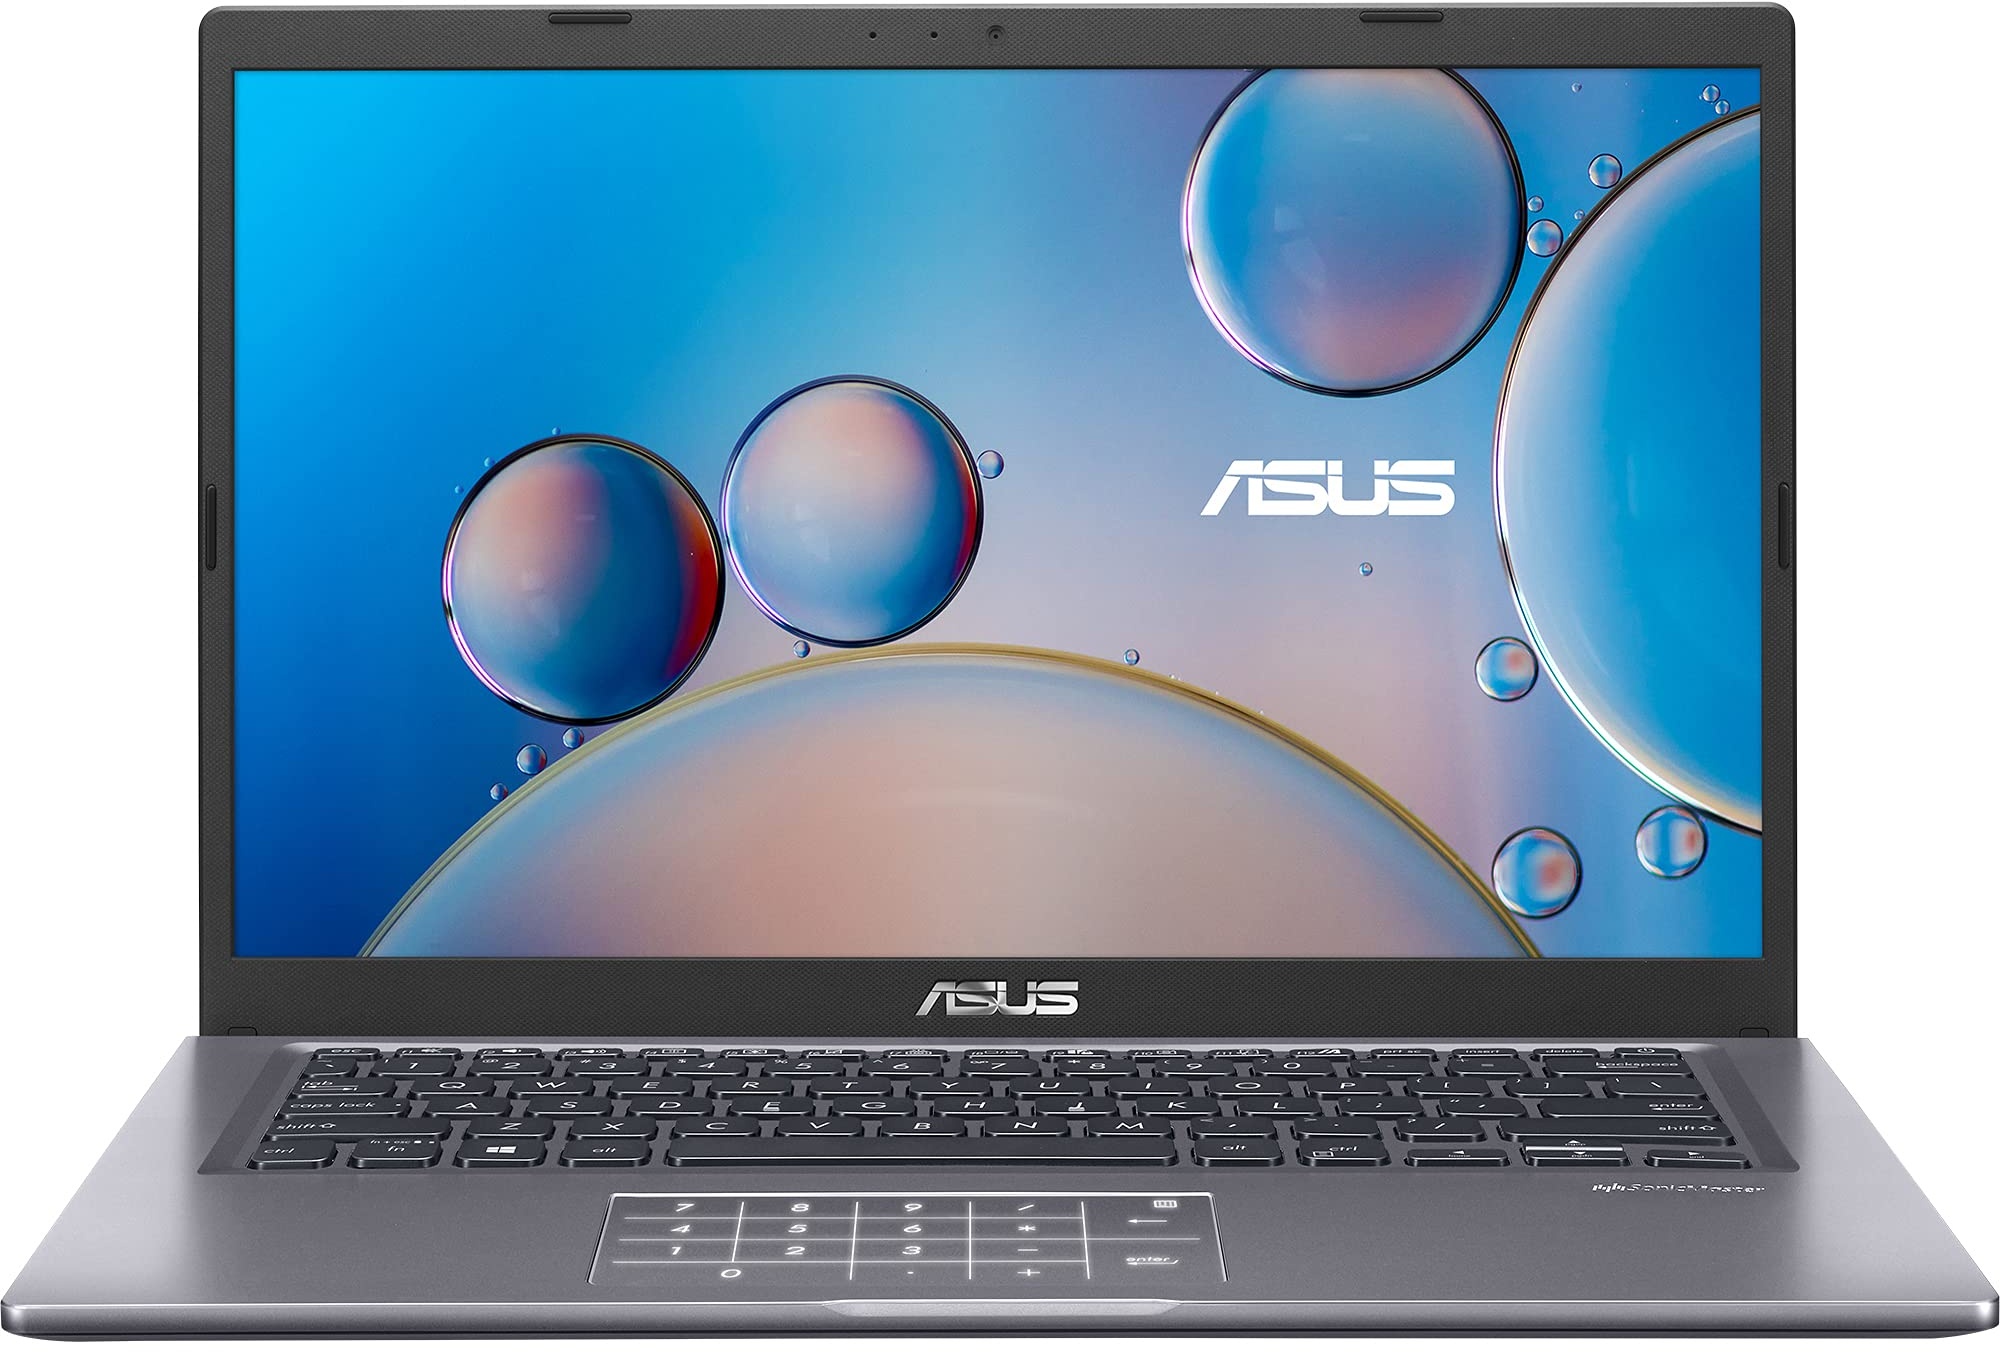 ASUS F415EA-EB267 i3-1115G4 Notebook 35,6 cm (14 Zoll) Full HD Intel® CoreTM i3 4 GB DDR4-SDRAM 256 GB SSD Wi-Fi 5 (802.11ac) Grau